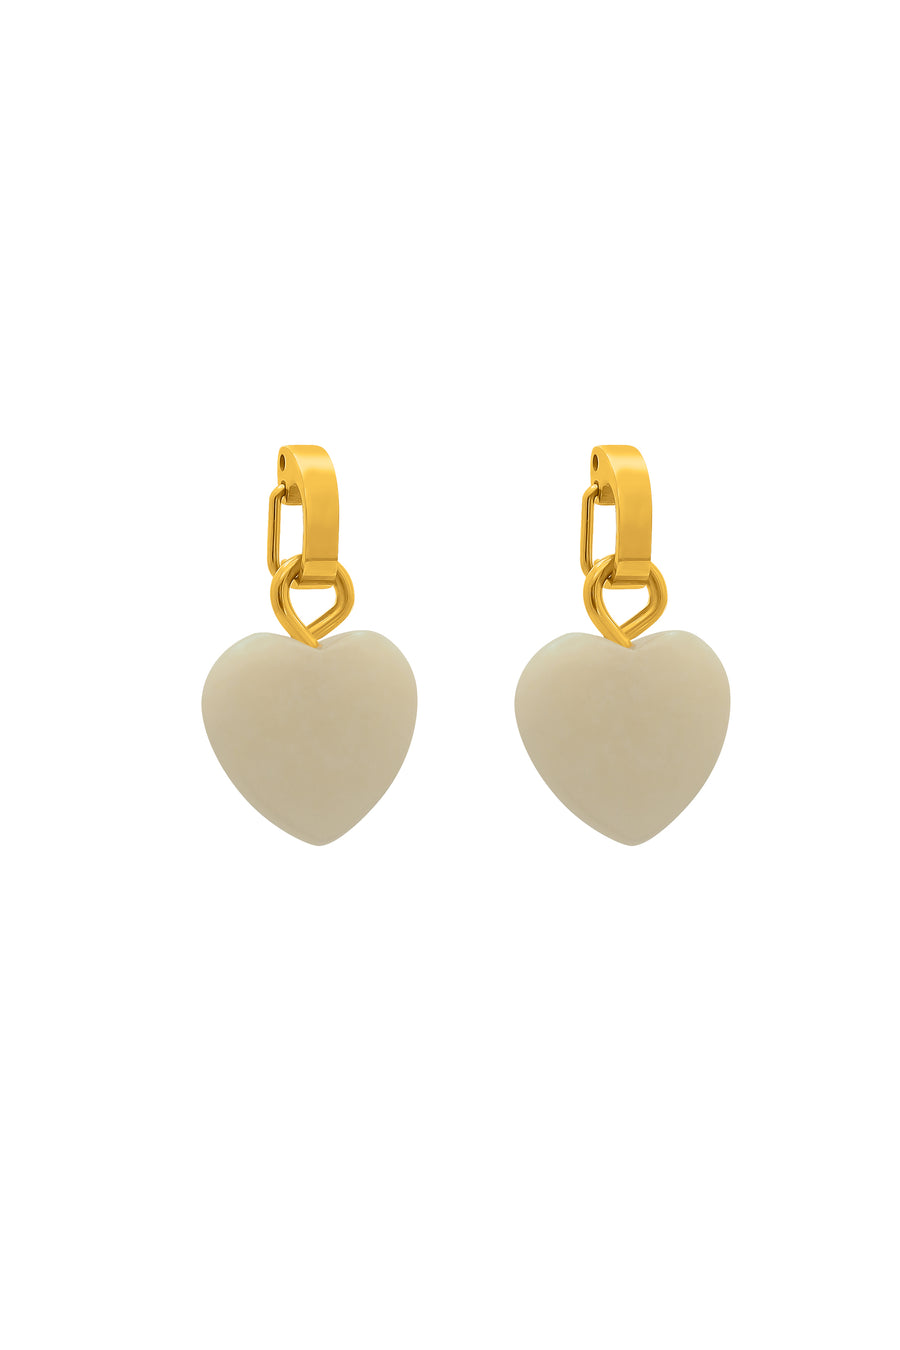 October Heart Birthstone Pendant Earring Set